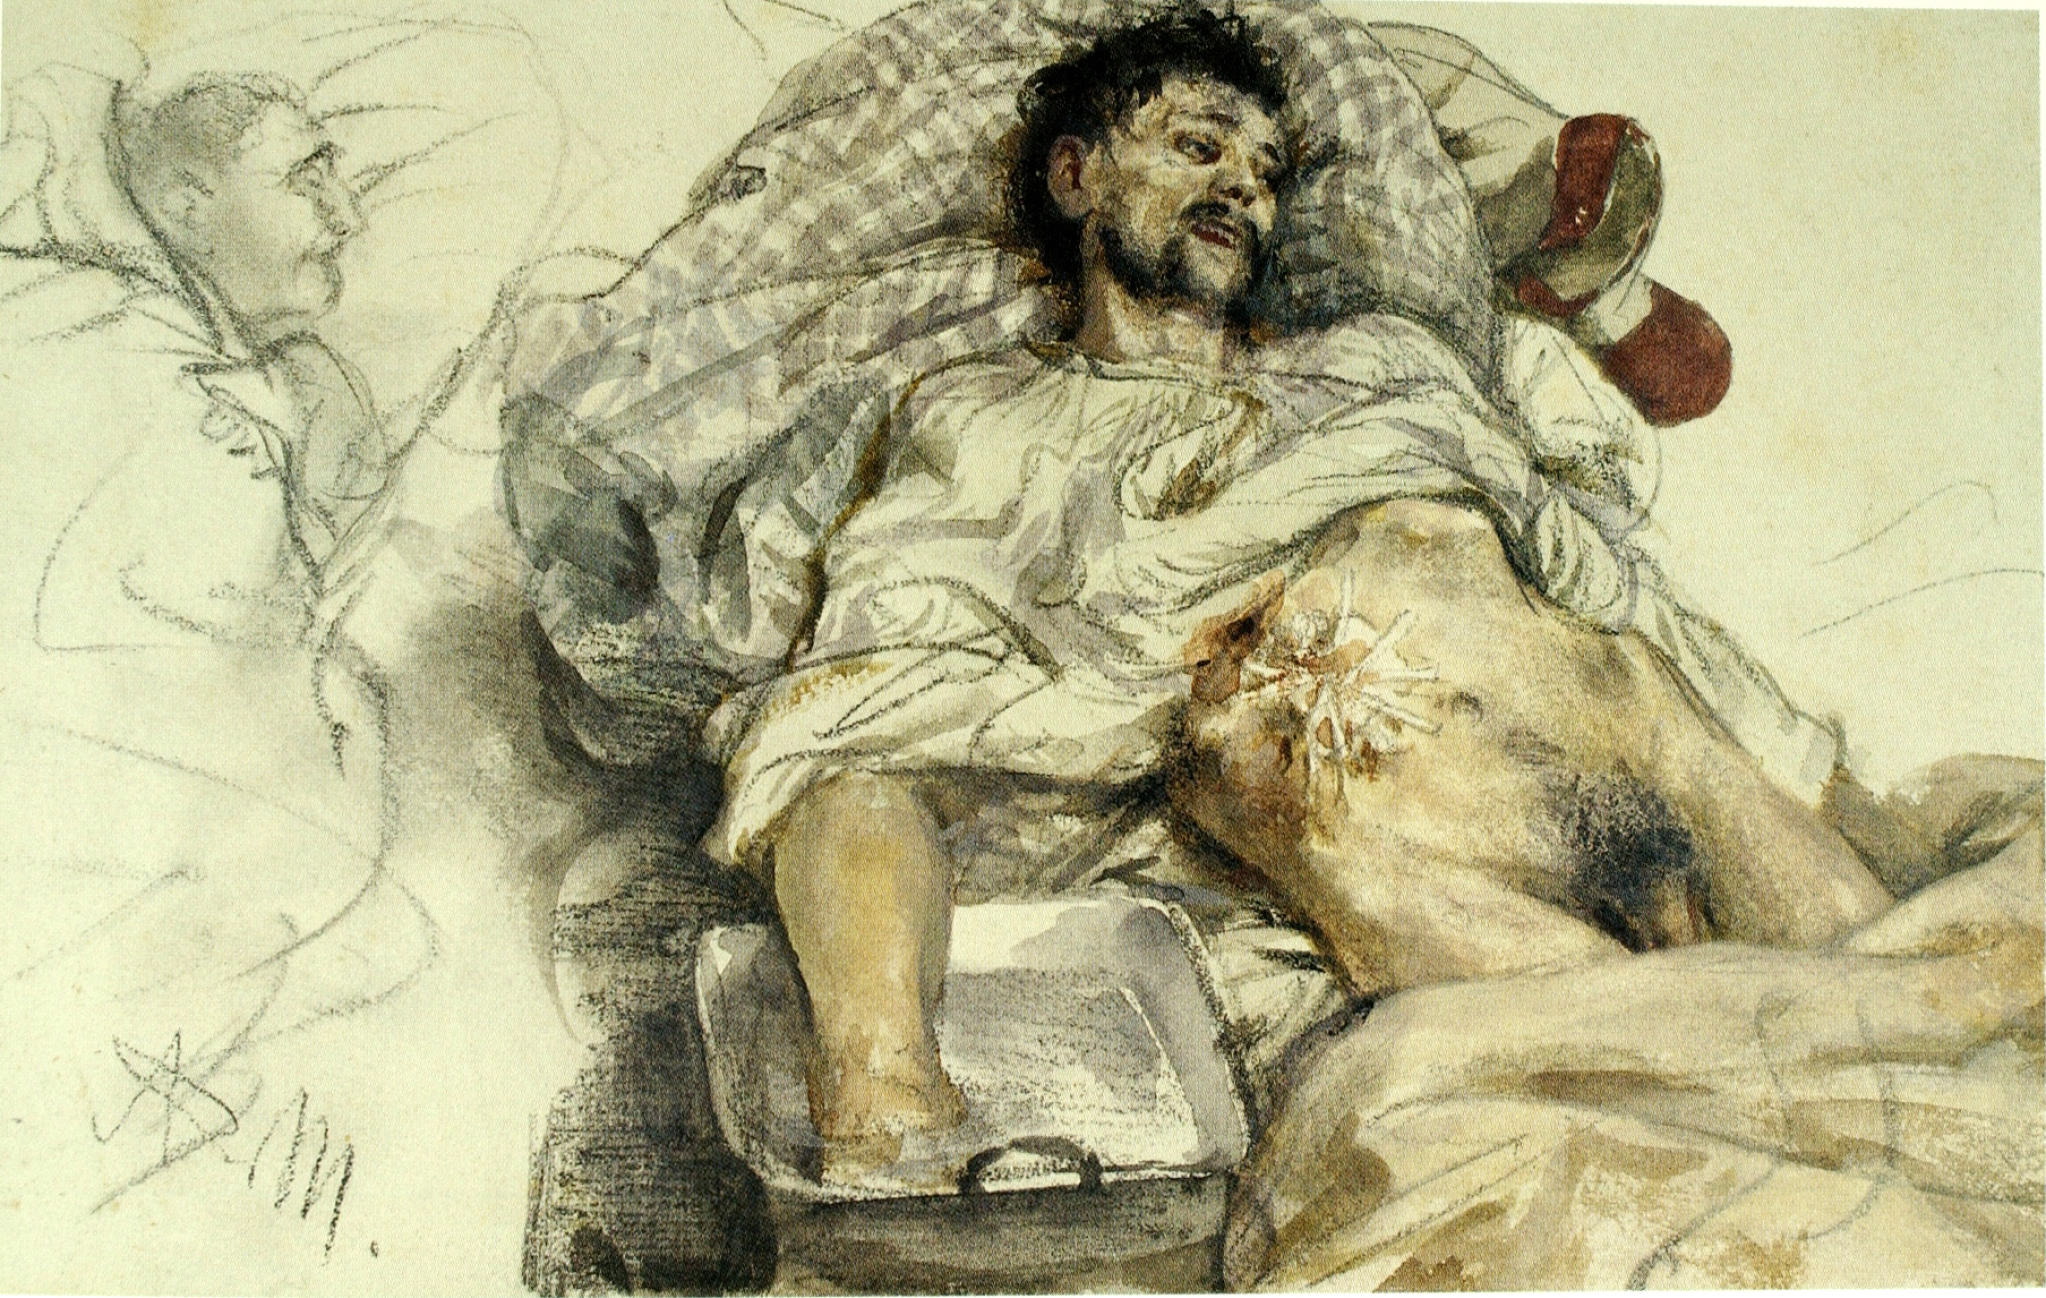 Der sterbende Soldat / Dying Soldier, 186